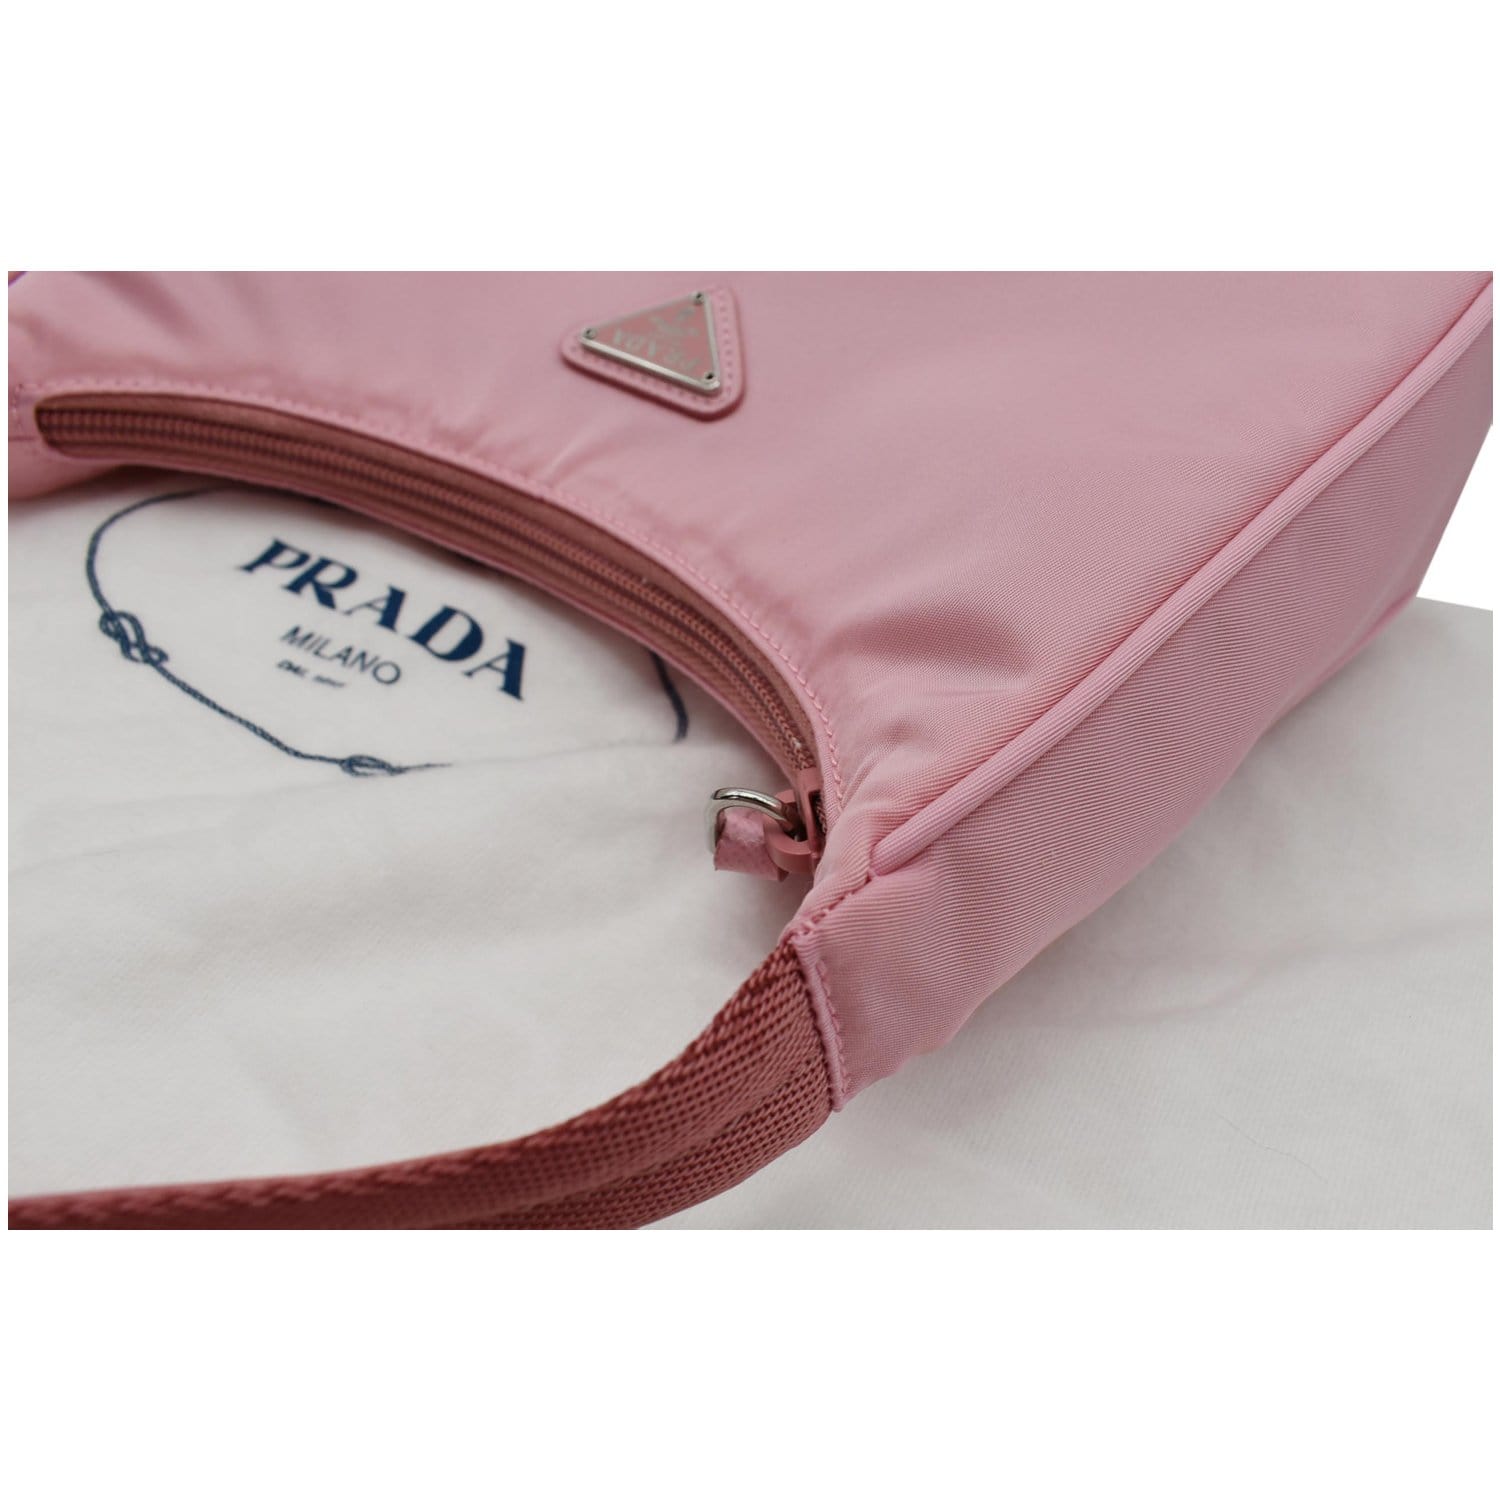 Prada Pochette Shoulder Bag Tessuto Small Pink 2158711